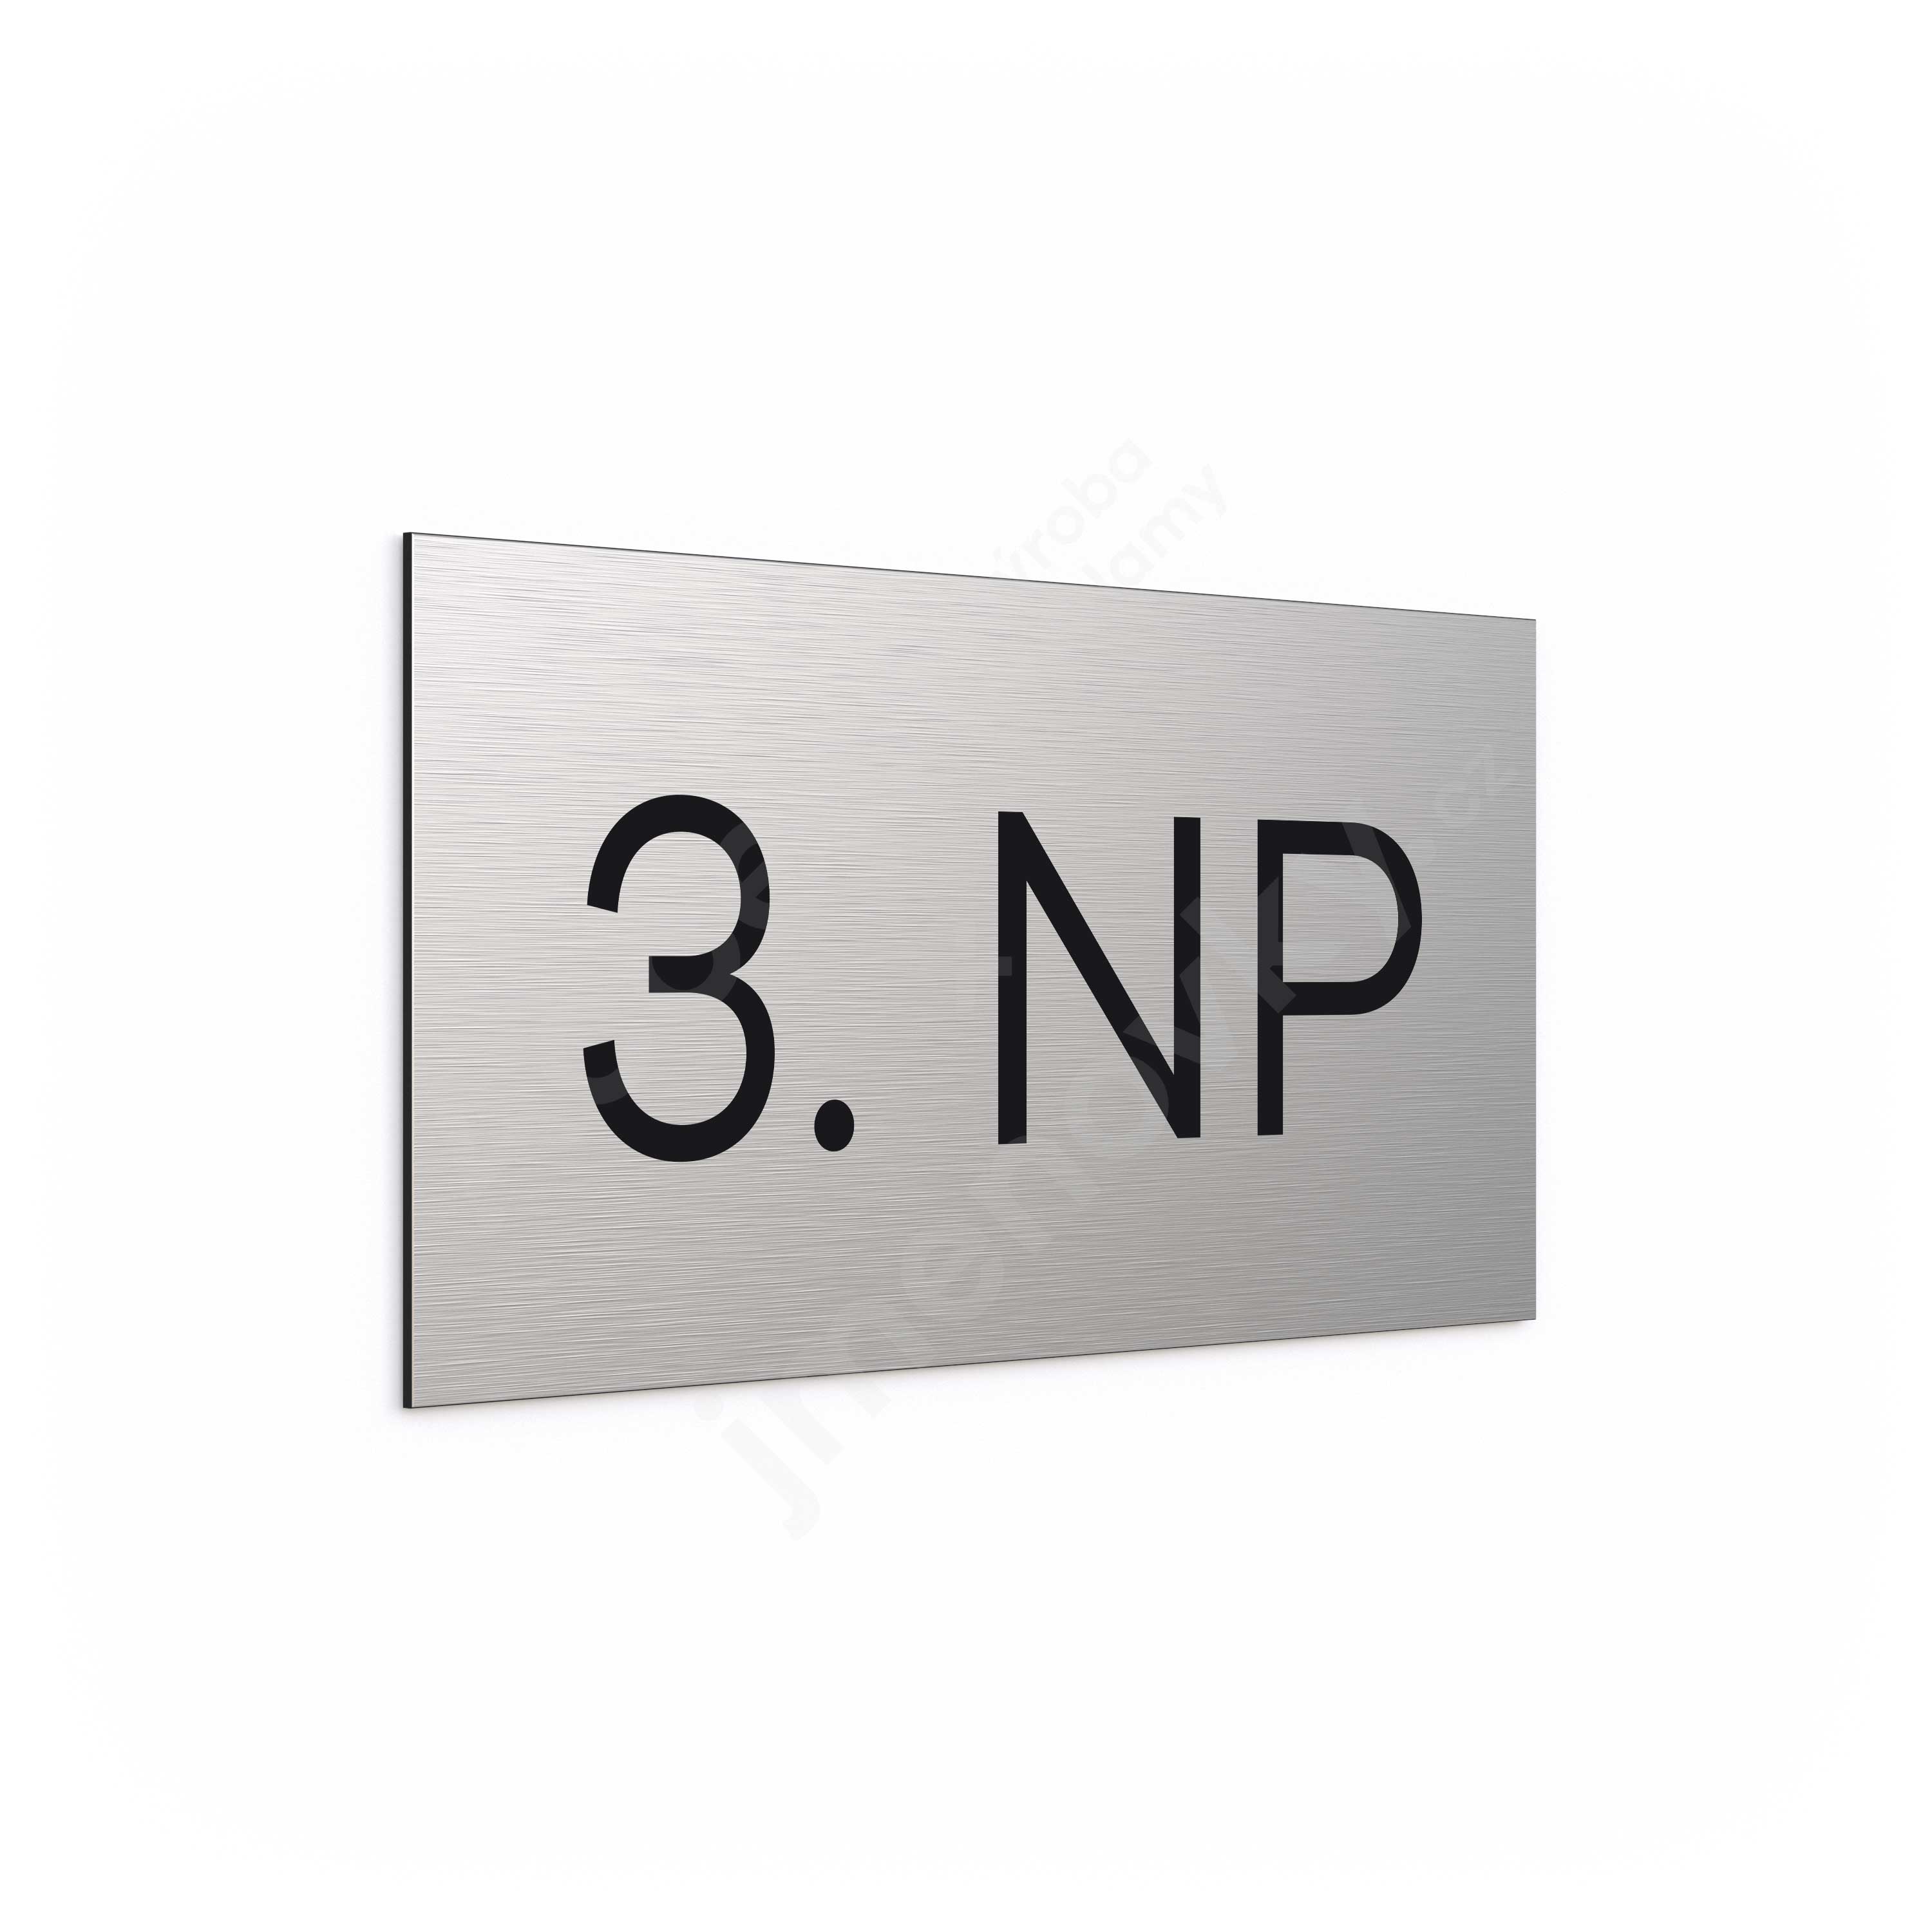 Označení podlaží "3. NP" - stříbrná tabulka - černý popis